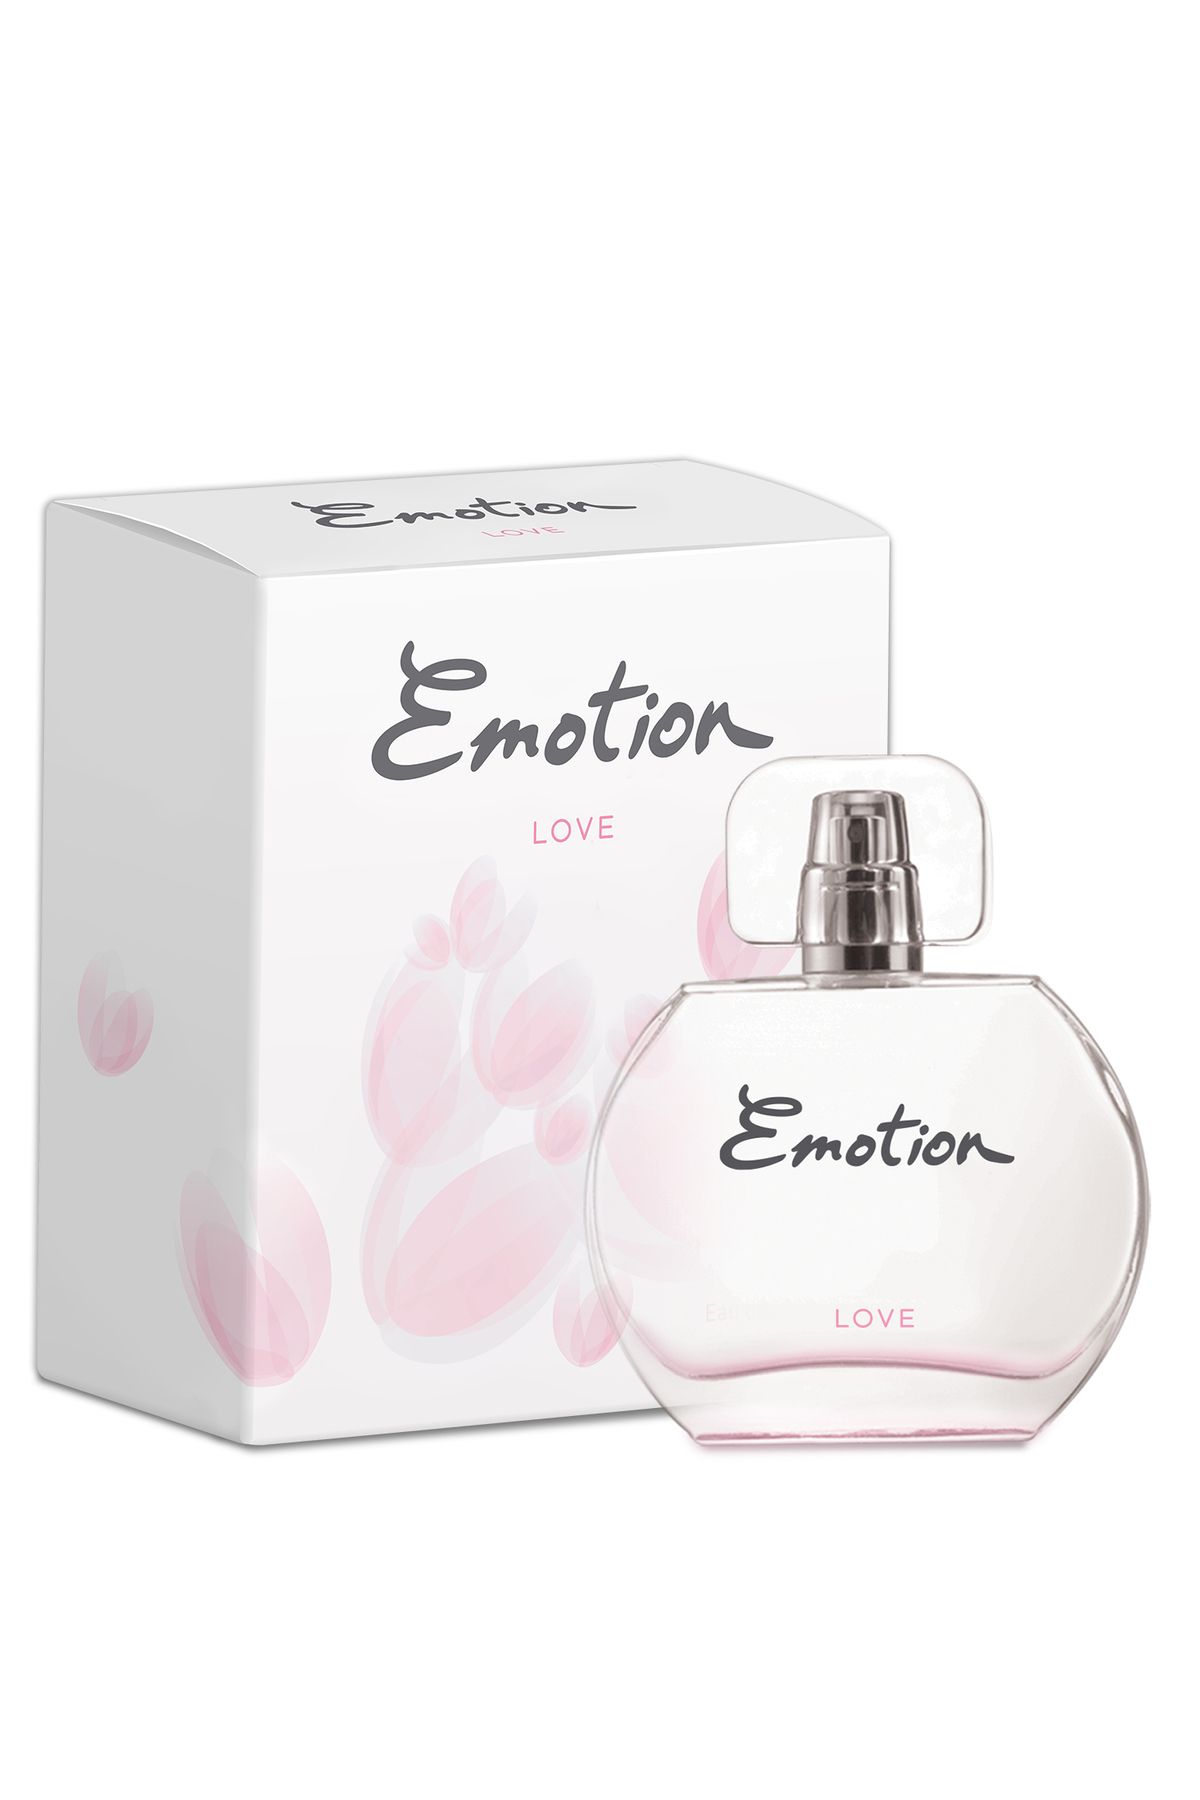 Emotion Love EDT Parfüm 50ml